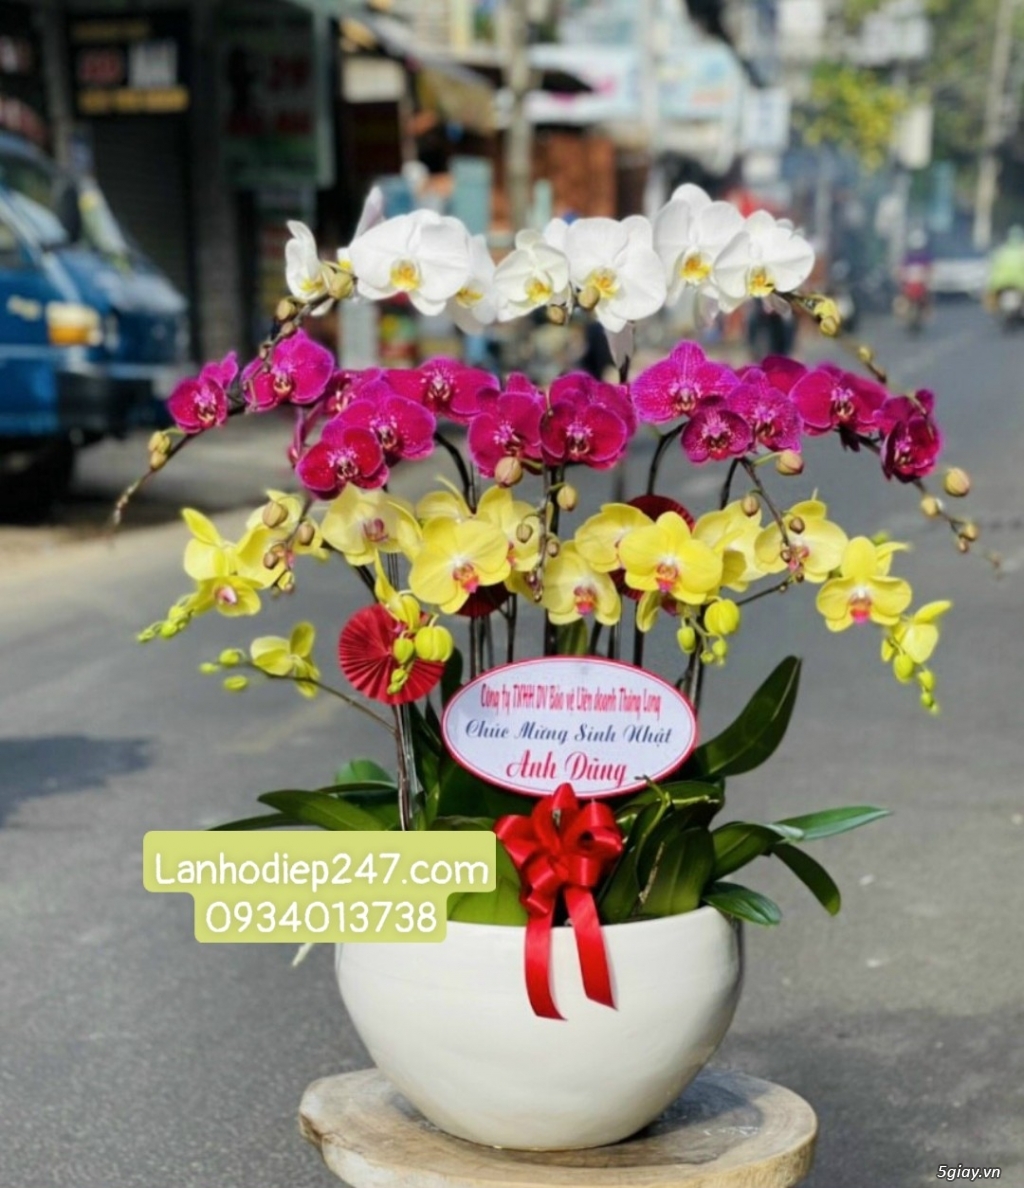 Shop Hoa Lan Hồ Điệp cao cấp tại quận 7 tphcm - Hoa Lan 247 Sài Gòn - 13